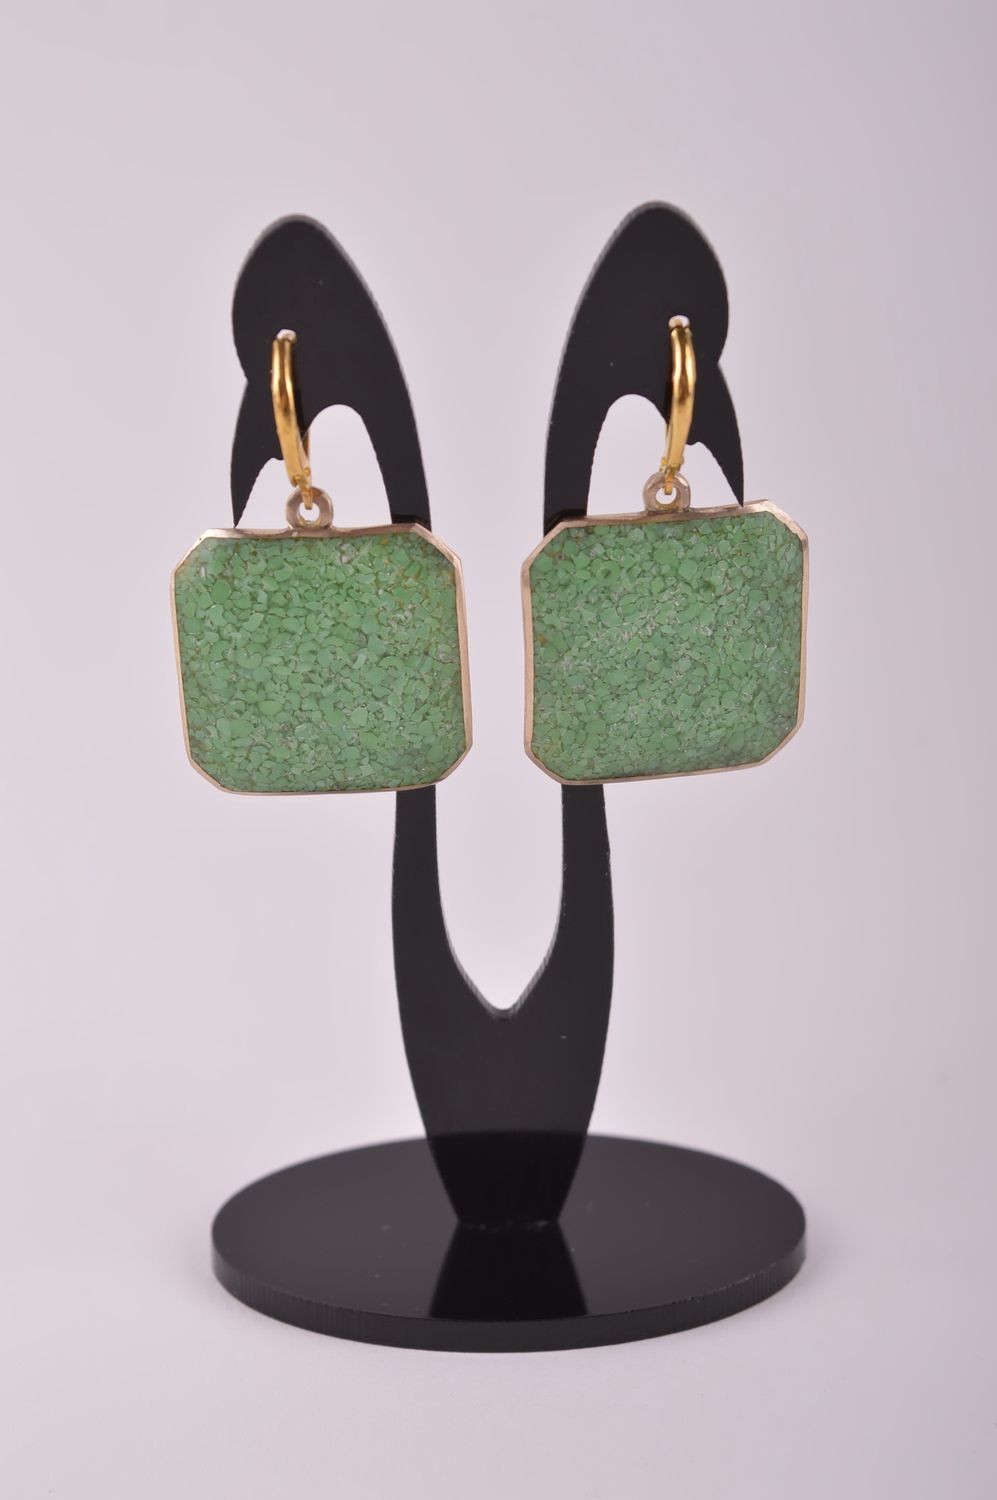 Украшение из латуни handmade серьги из натуральных камней модные серьги зеленые фото 2